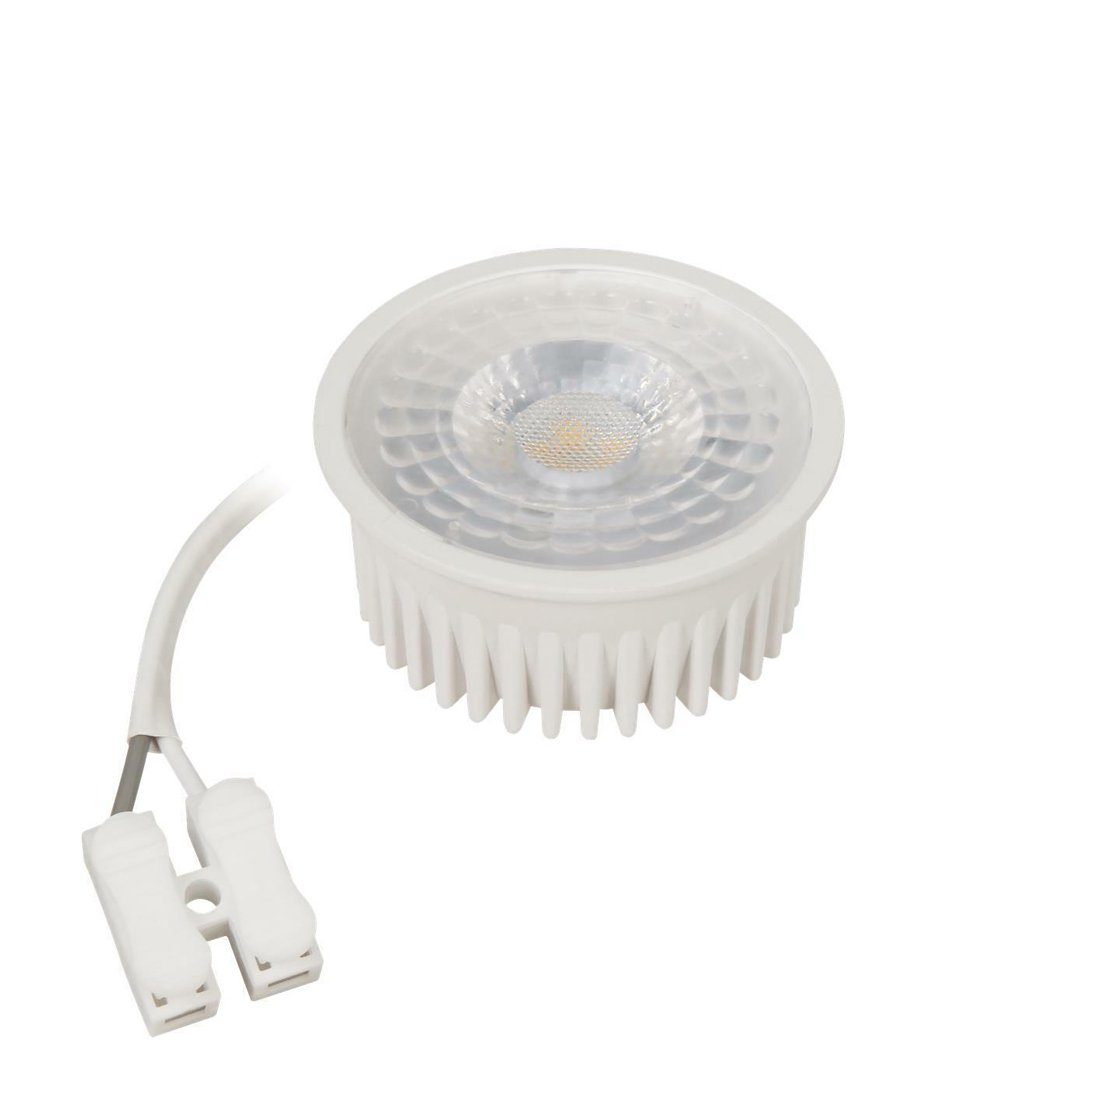 McShine »5W LED Modul Leuchtmittel Lampe Einbaustrahler« LED-Leuchtmittel,  Warmweiß, Extra Flache Alternative für GU10 und MR16, Abstrahlwinkel 36°,  230V COB LED, 350 Lumen, Warmeslicht